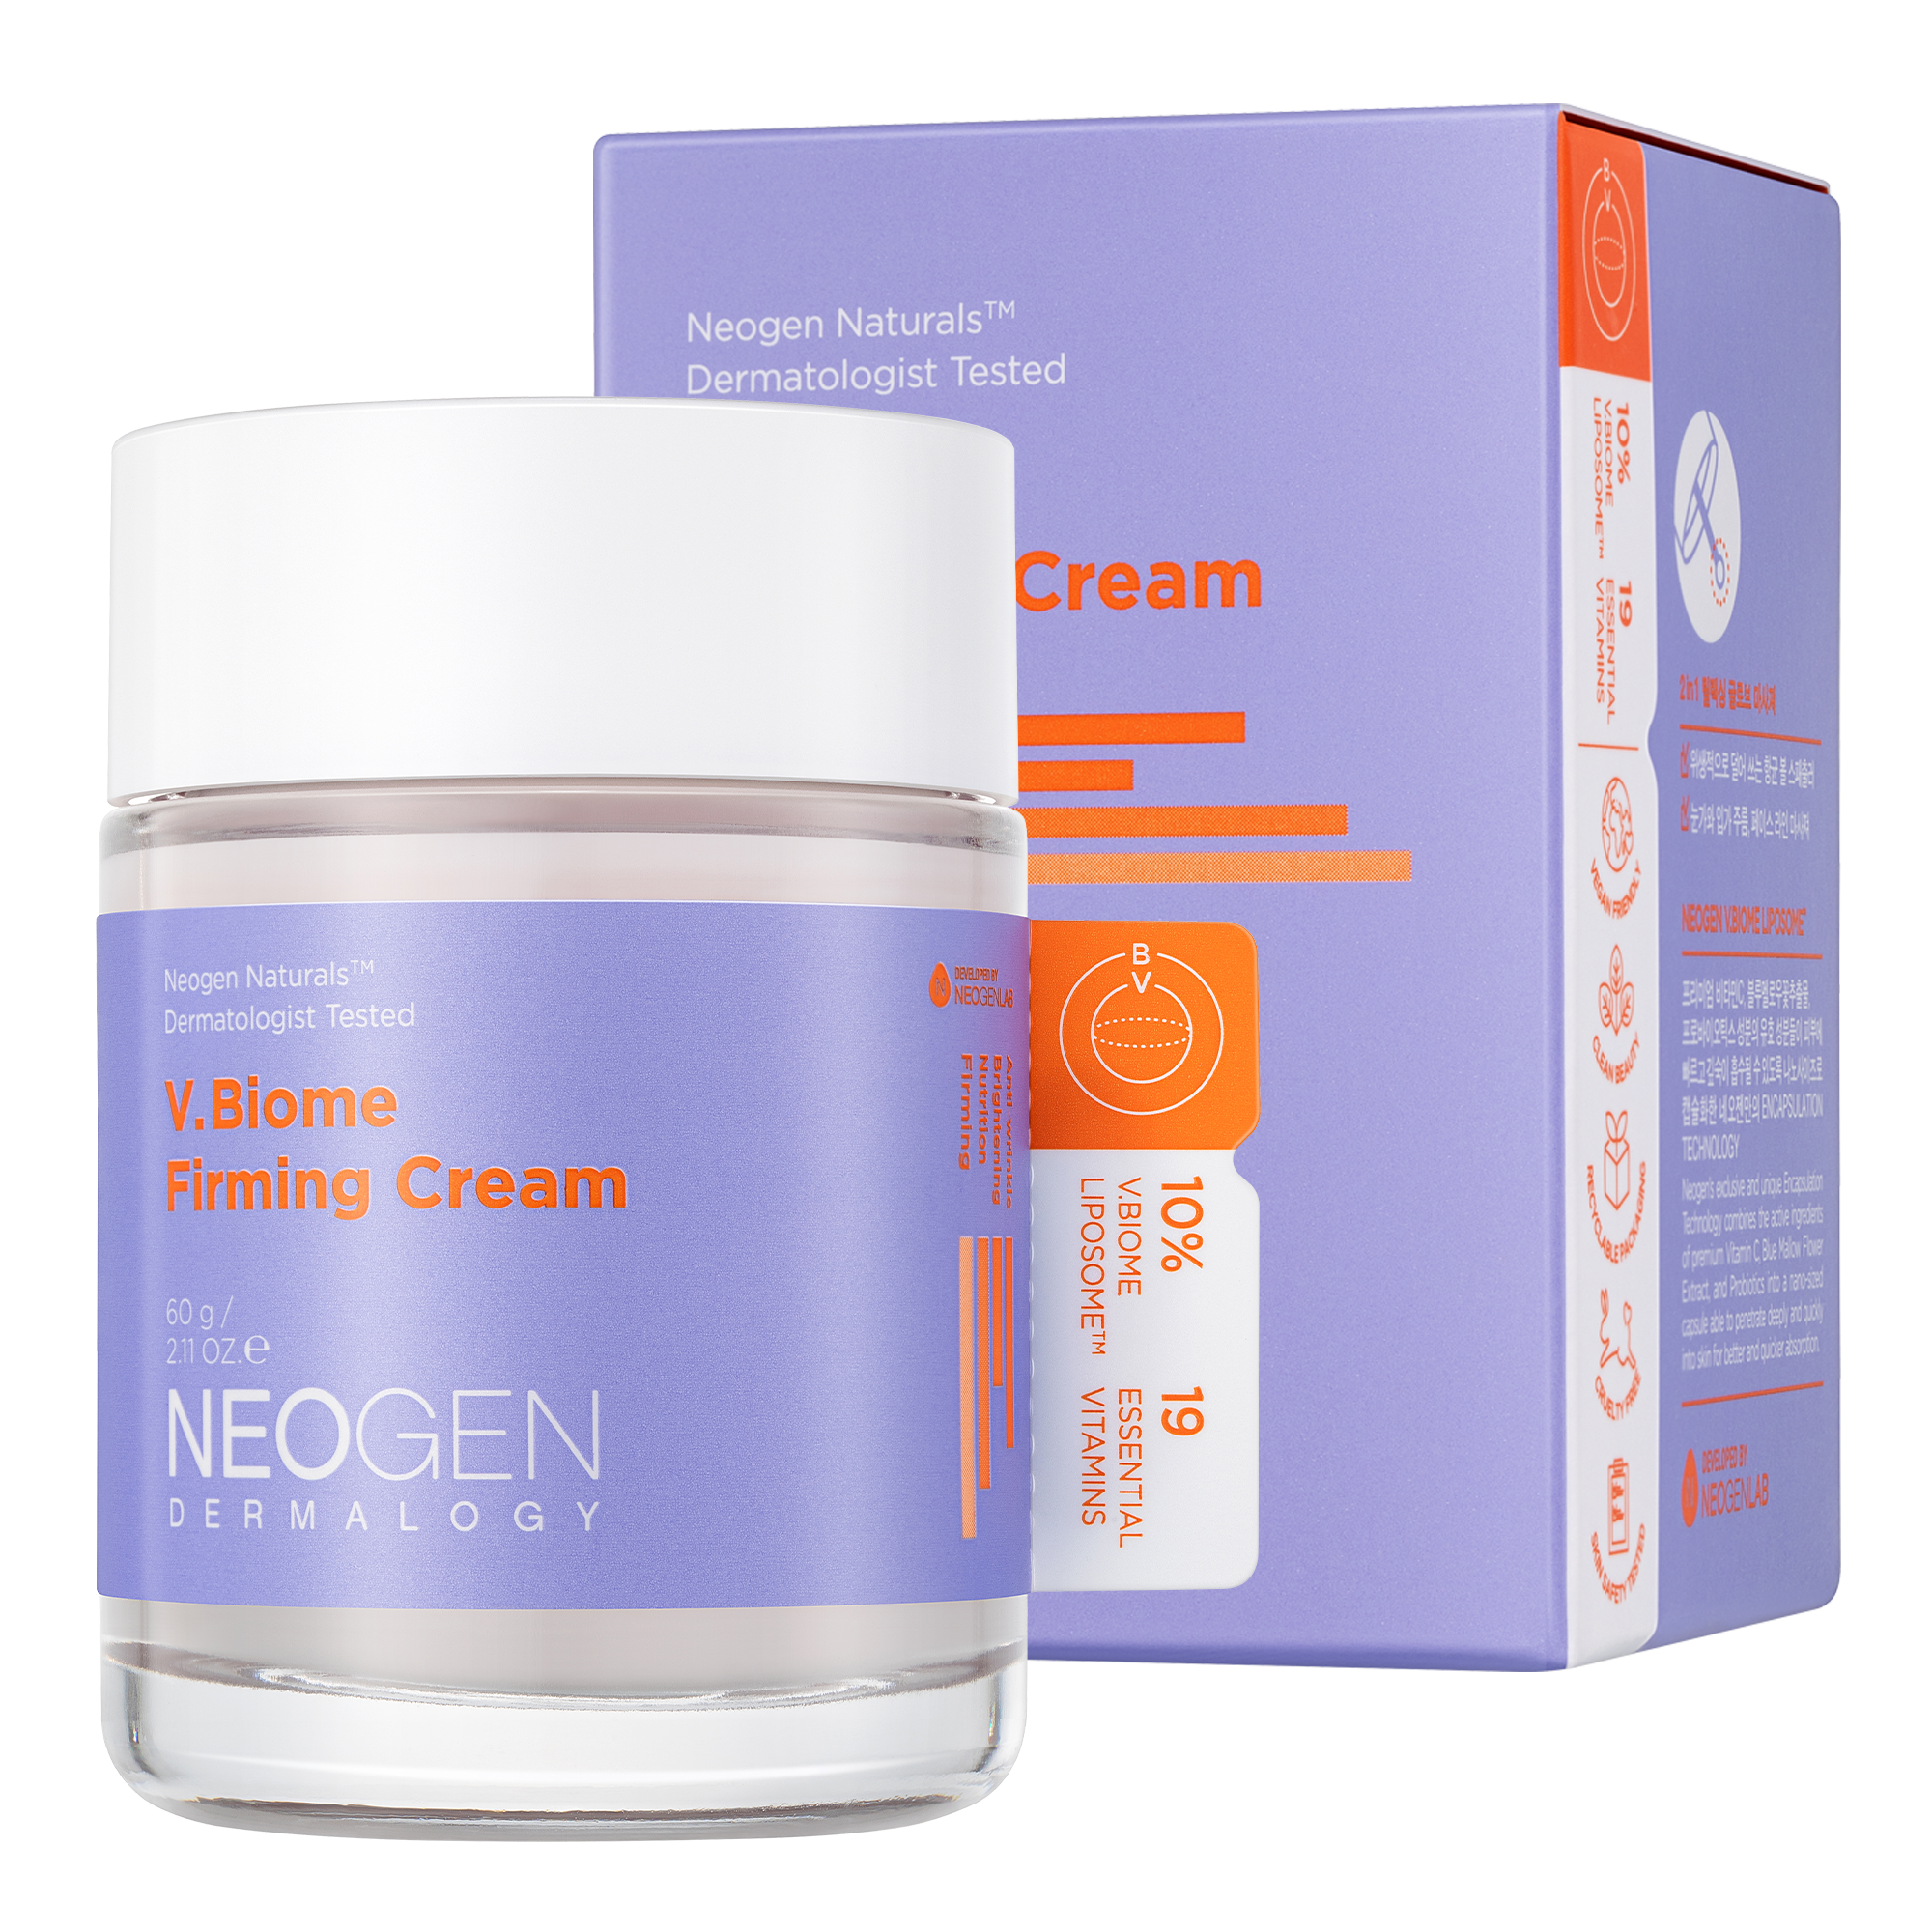 NEOGEN DERMALOGY V.Biome Firming Cream